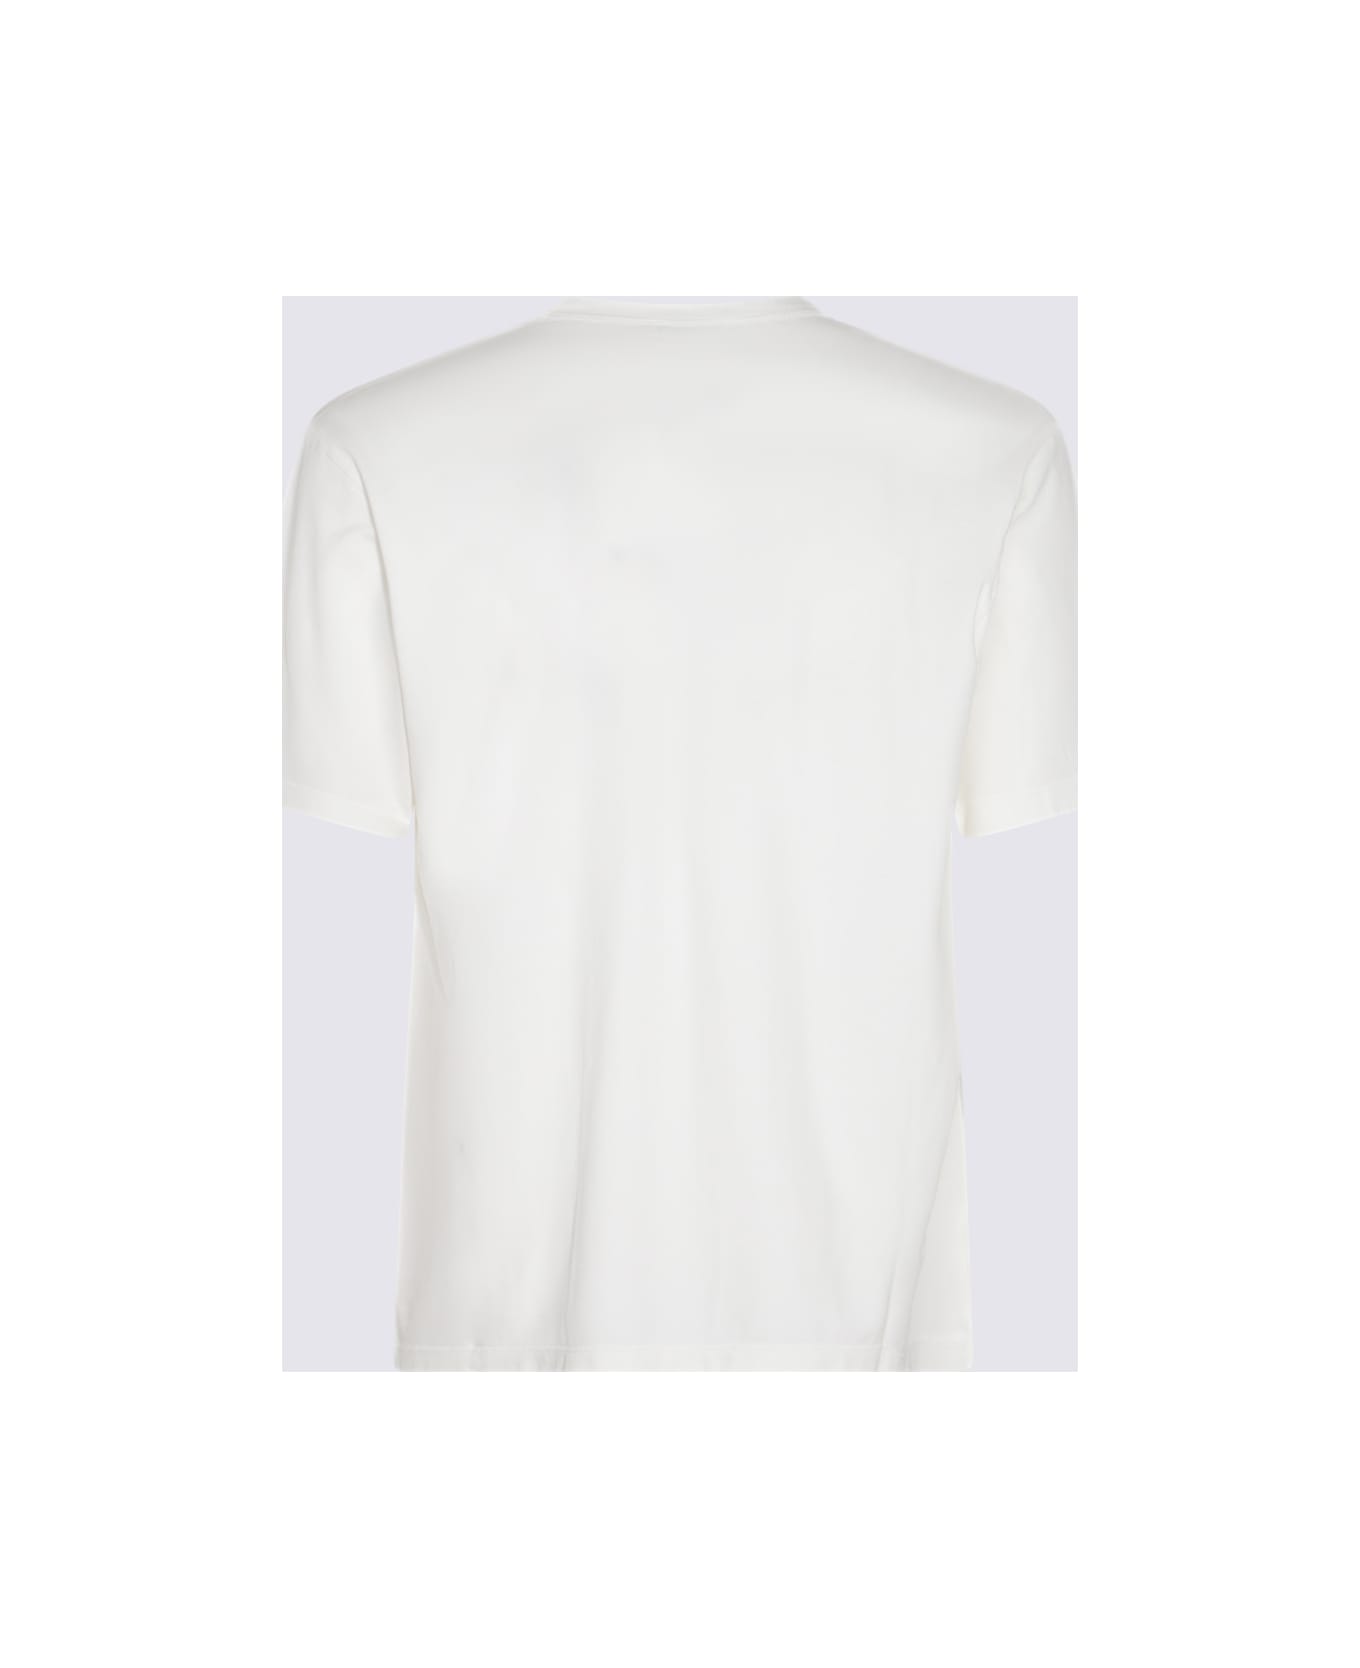 Piacenza Cashmere White Cotton T-shirt - White シャツ